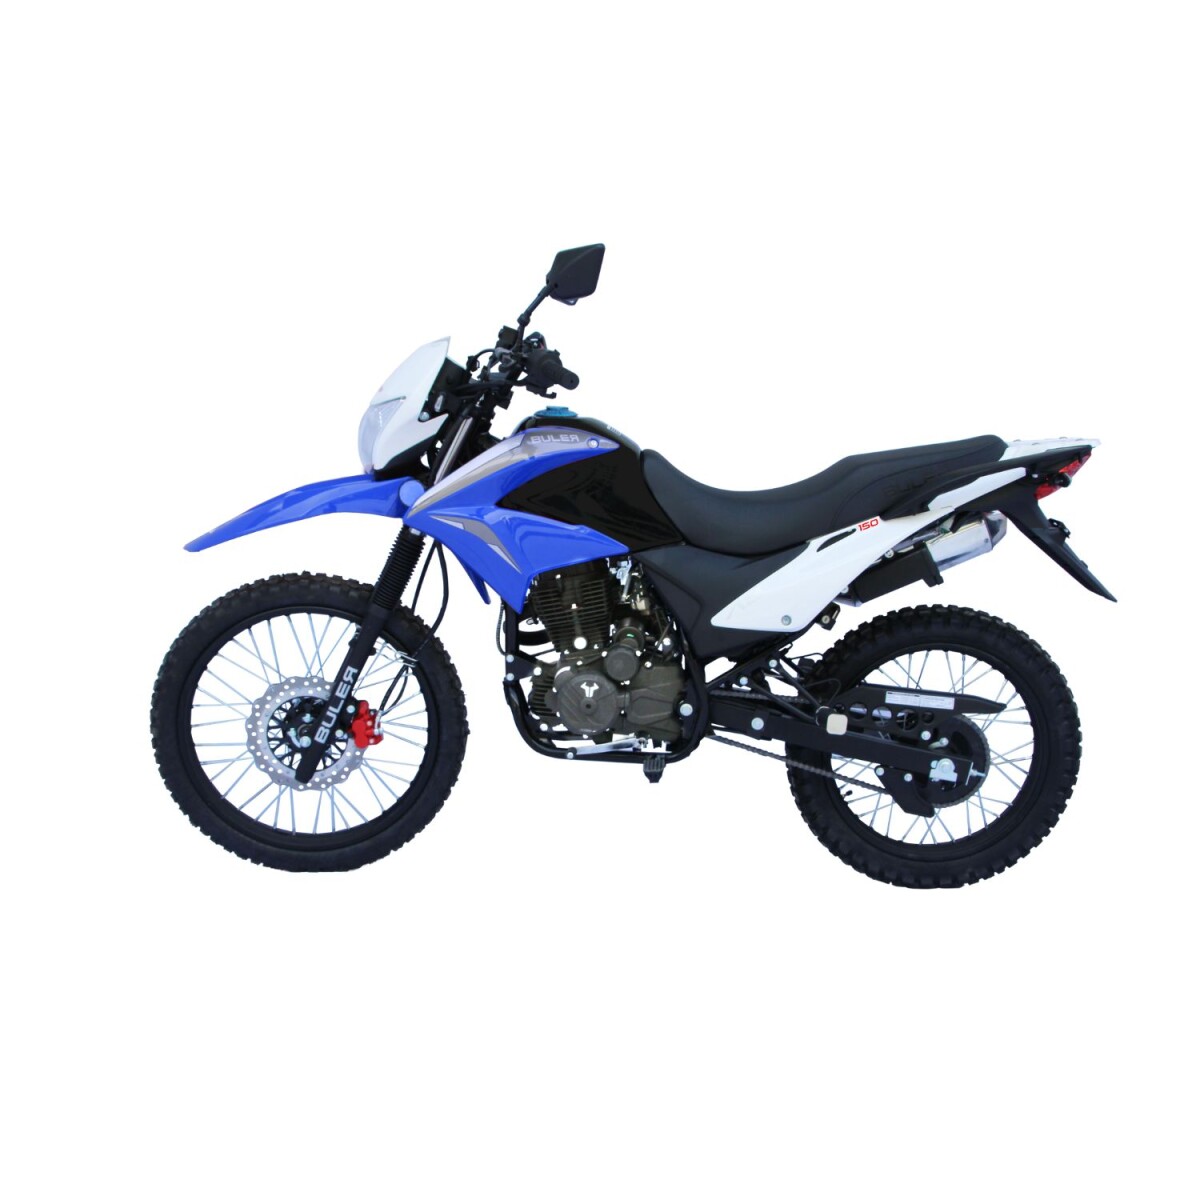 Motocicleta Buler Trail Adventure 150cc - Rayos - Azul 